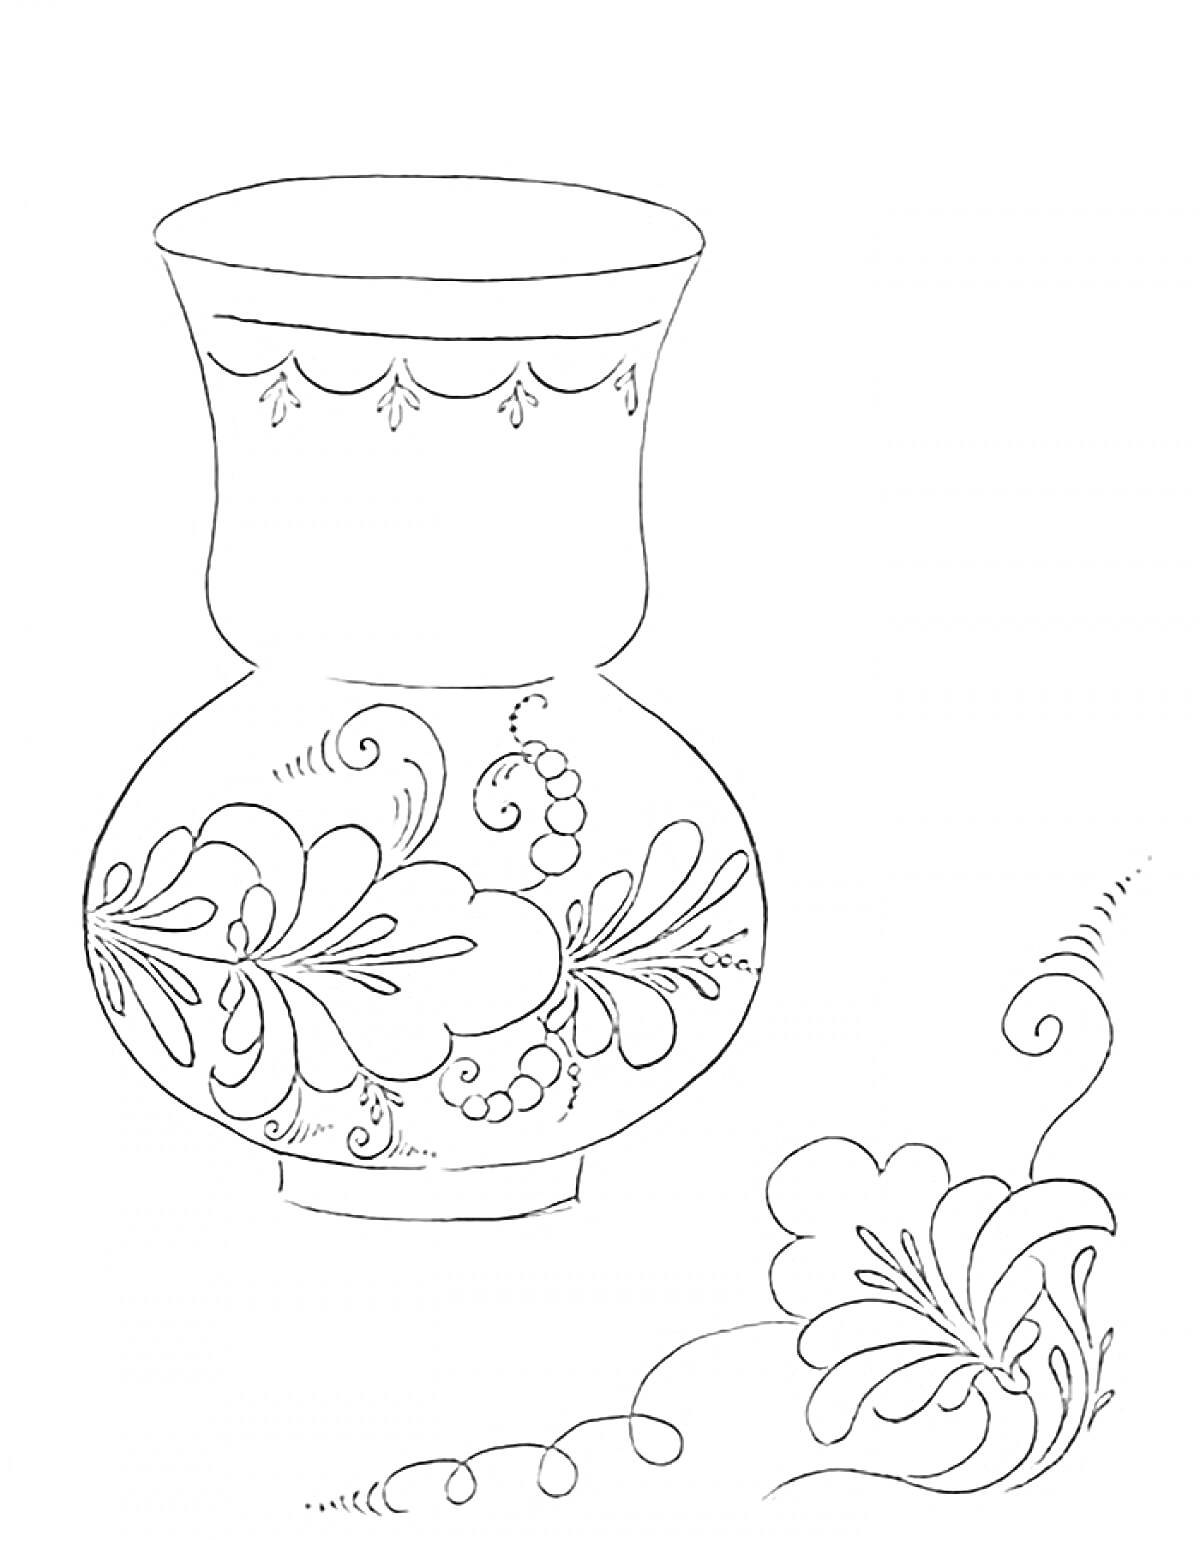 Раскраска Ваза с узорами и растительным орнаментом